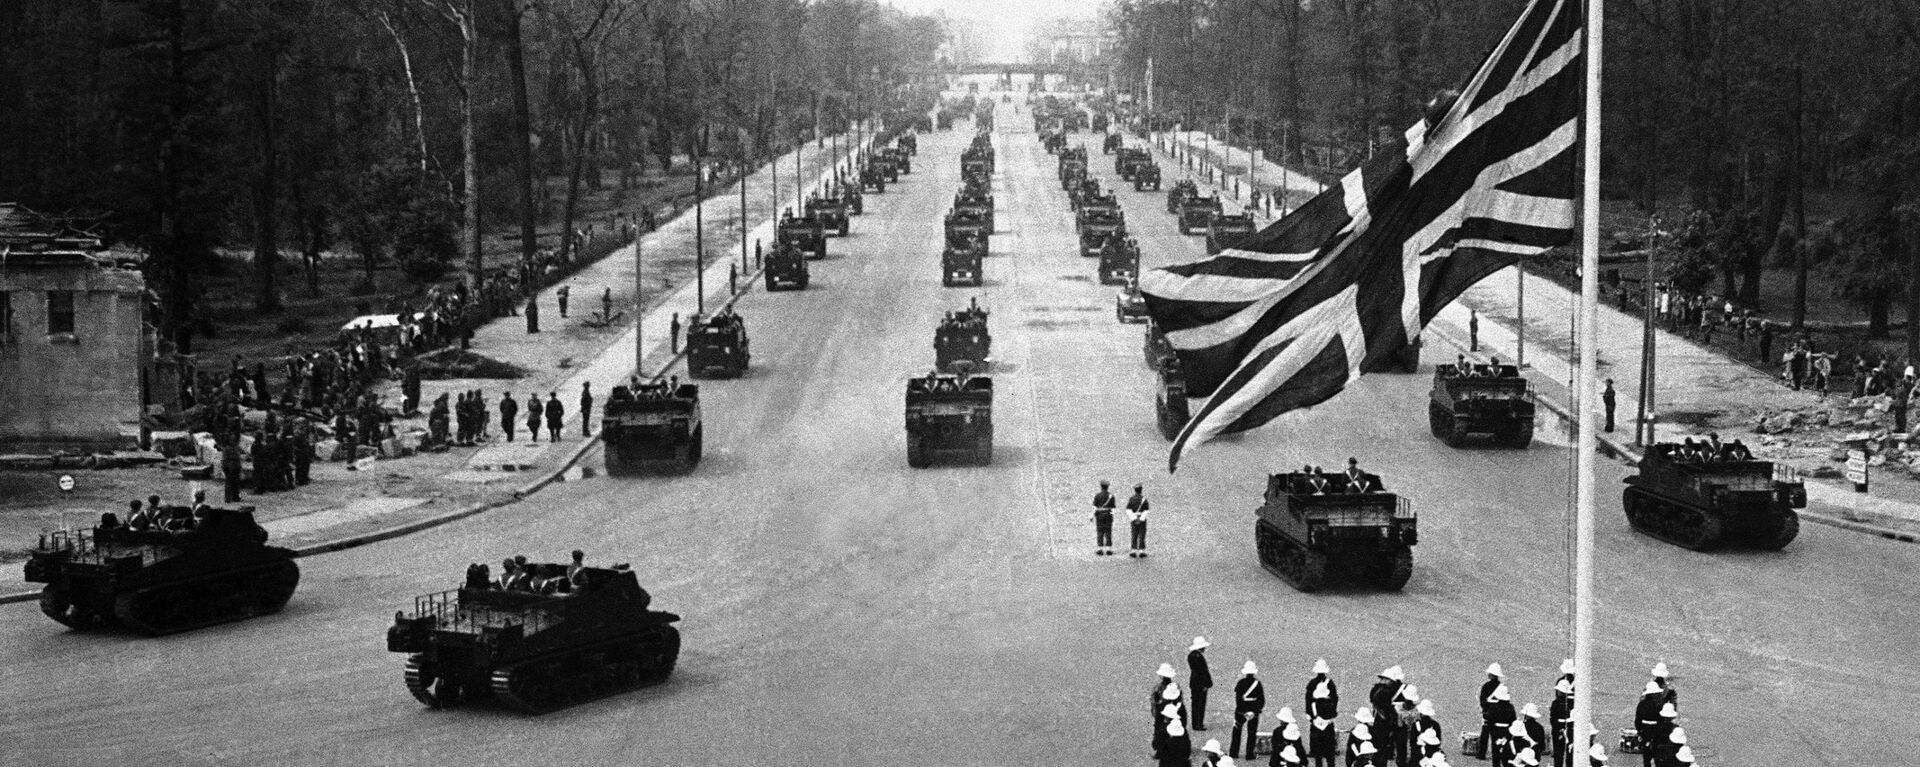 Британские военные во время парада в Берлине. 13 июля 1945 - Sputnik Latvija, 1920, 25.05.2021